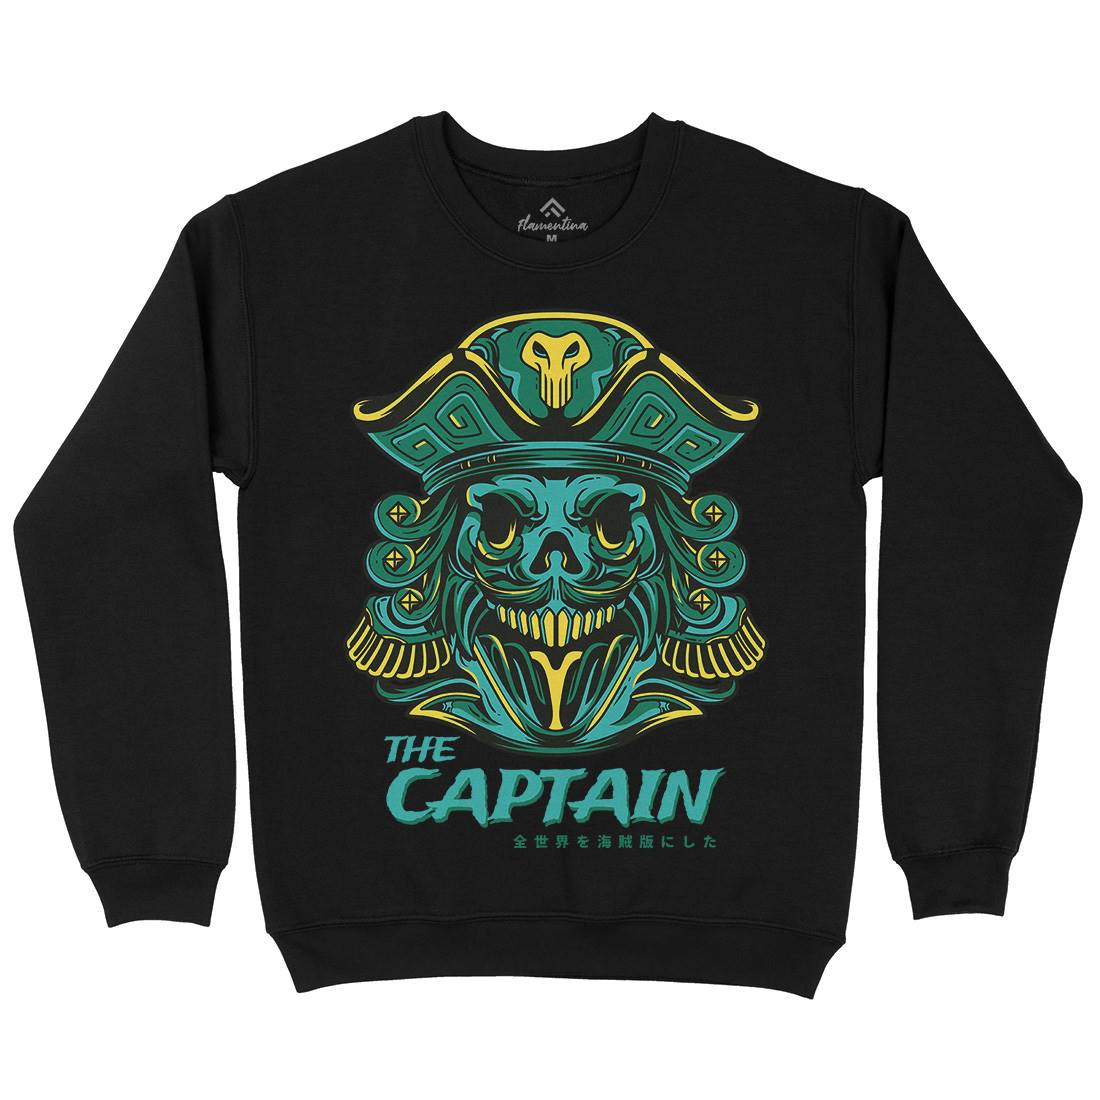 Captain Kids Crew Neck Sweatshirt Navy D847